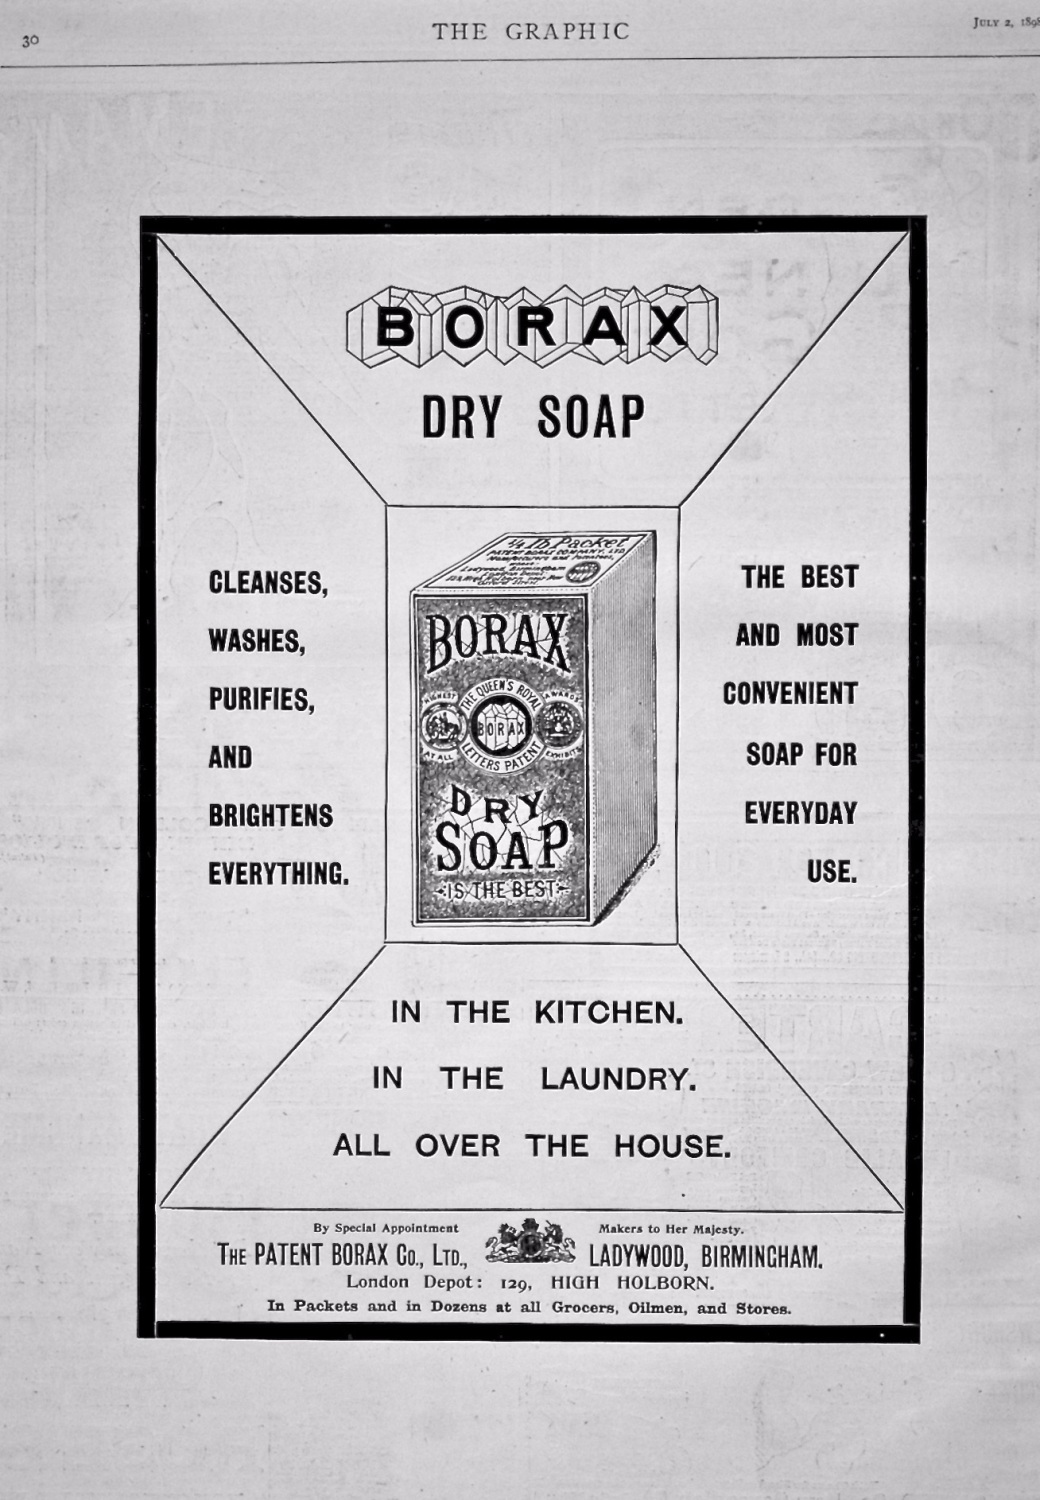 Borax Dry Soap. 1898.